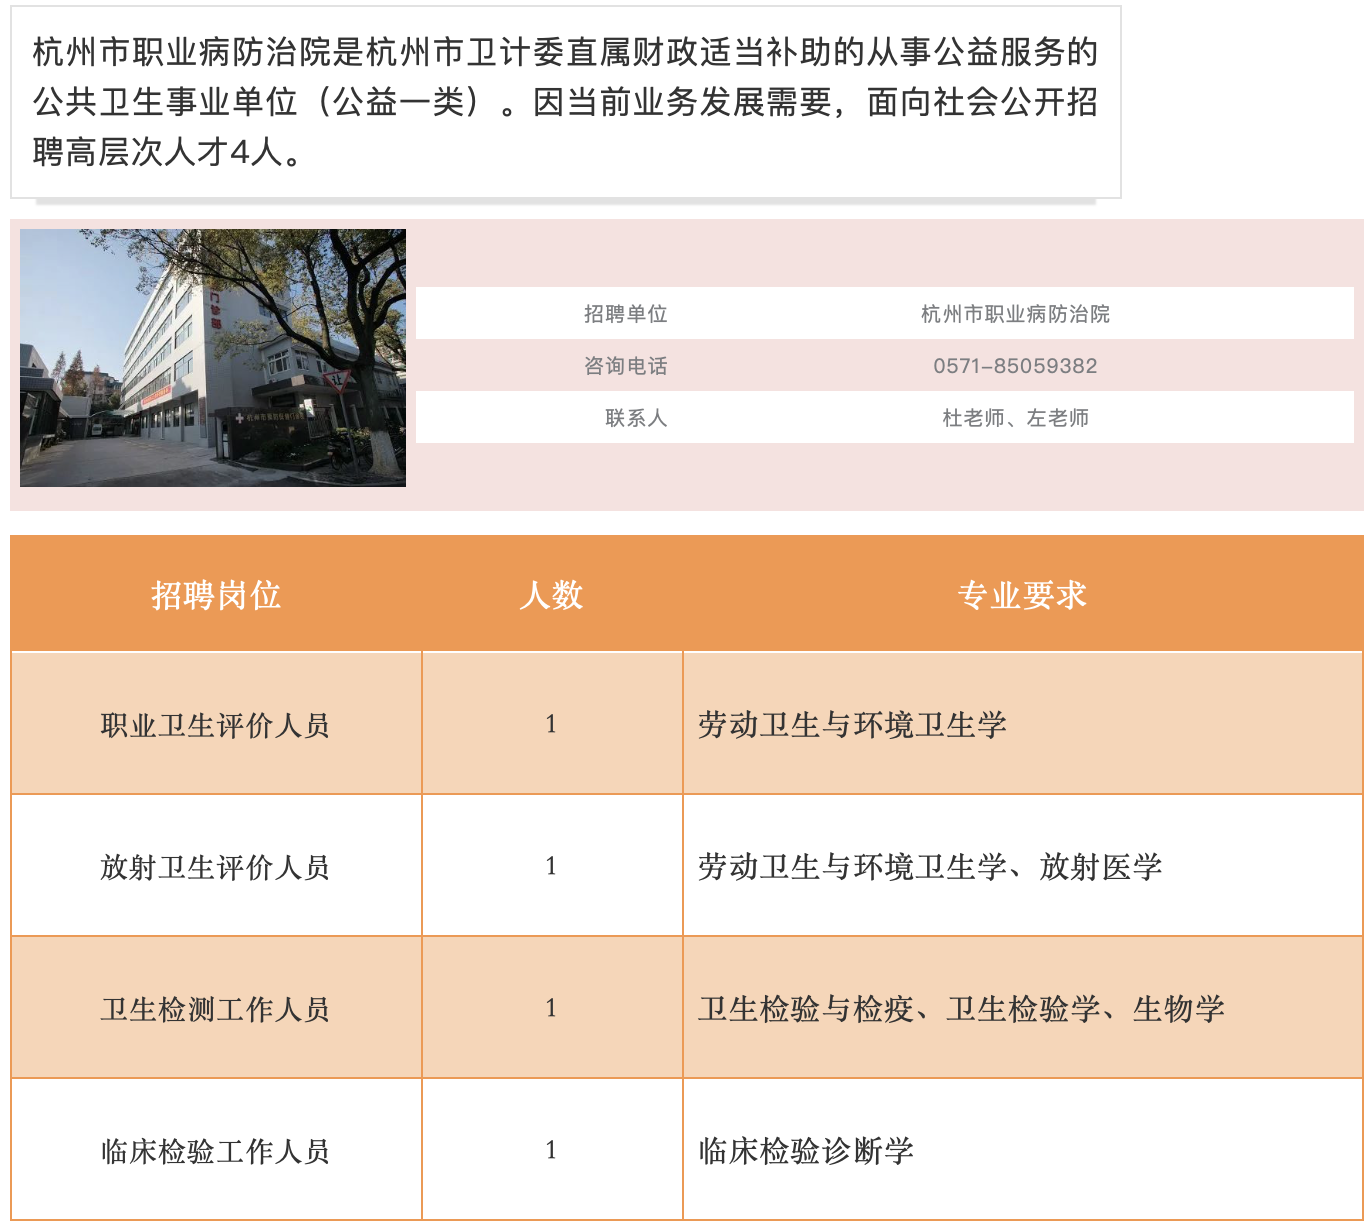 公告！2019上半年杭州市卫计委所属事业单位公开招聘419人